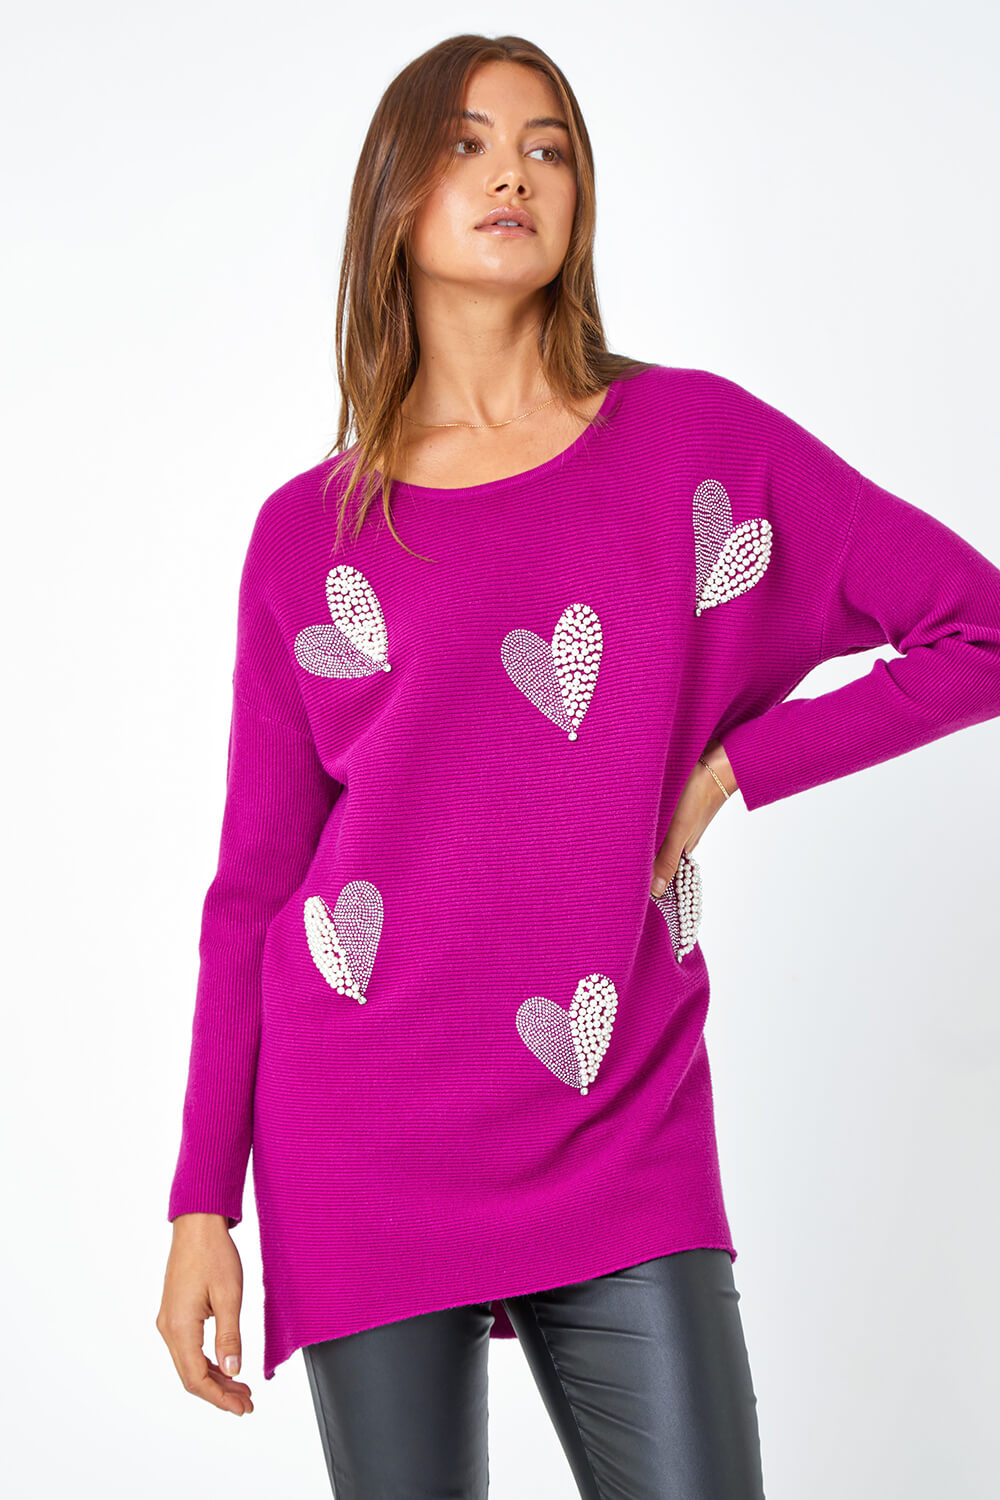 Magenta Sparkle Pearl Embellished Heart Jumper | Roman UK